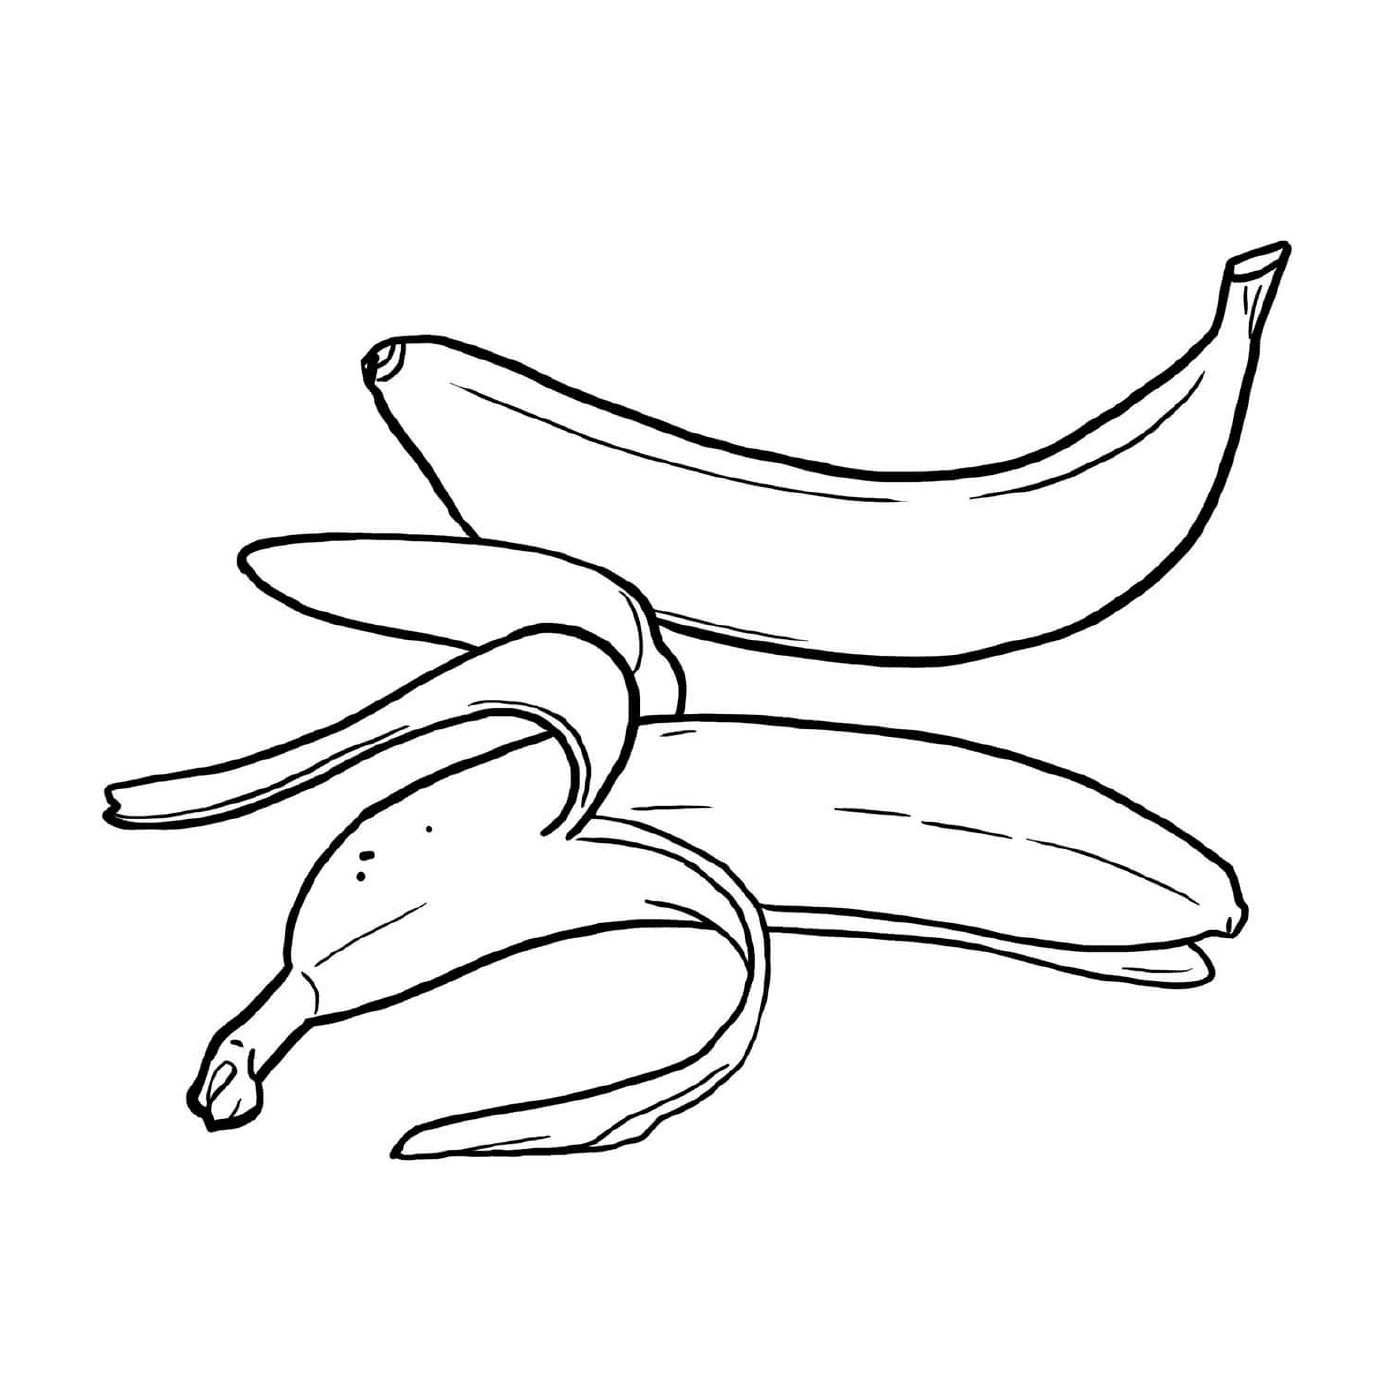  Várias bananas colocadas sobre uma mesa 